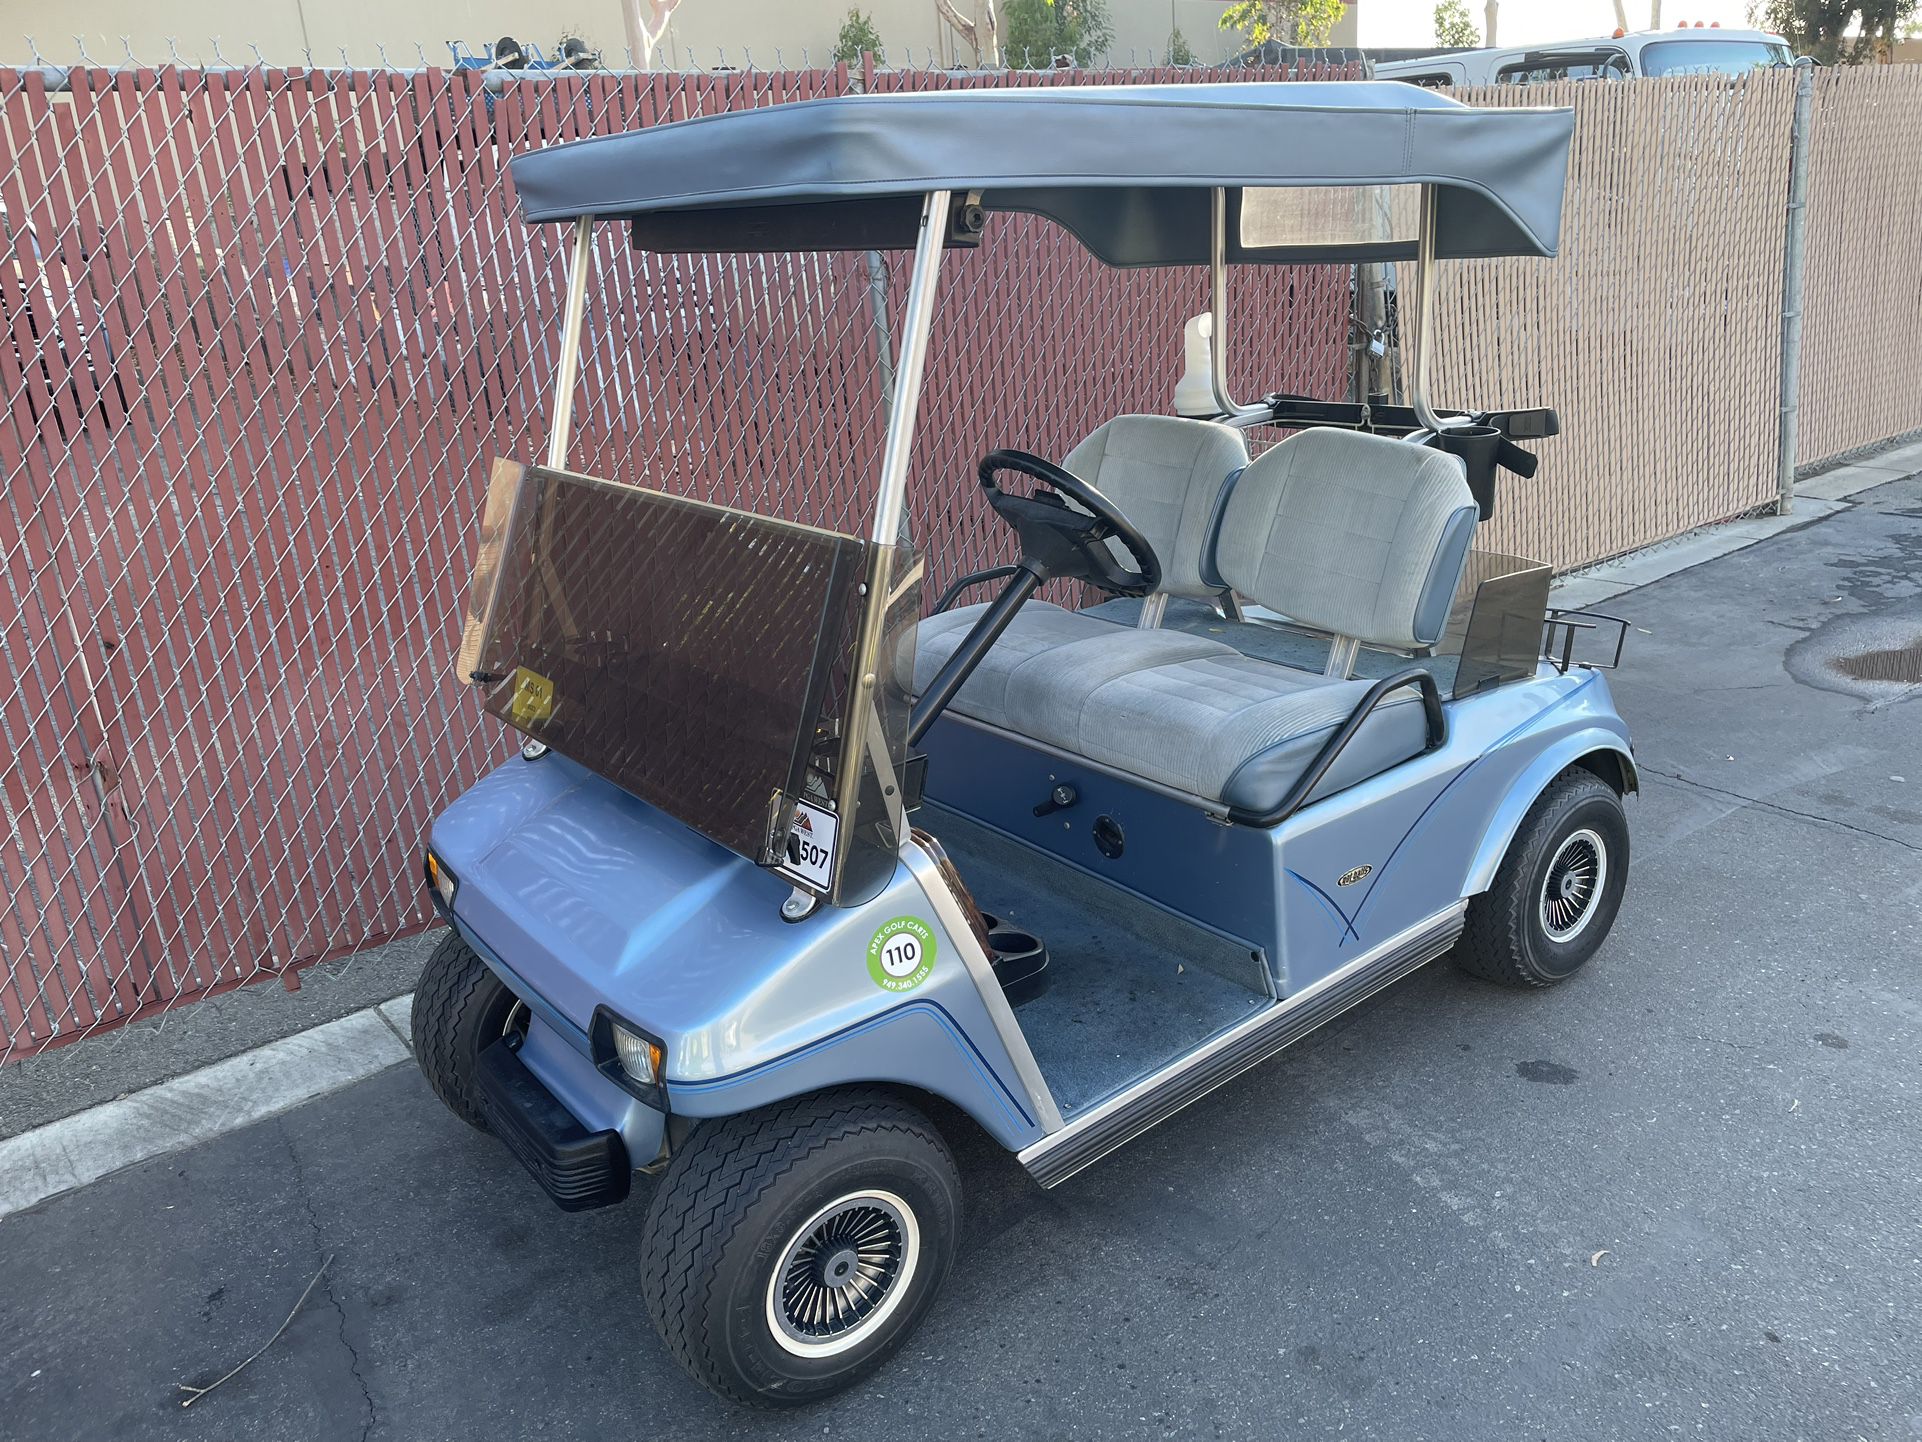 Club Car DS Golf Cart